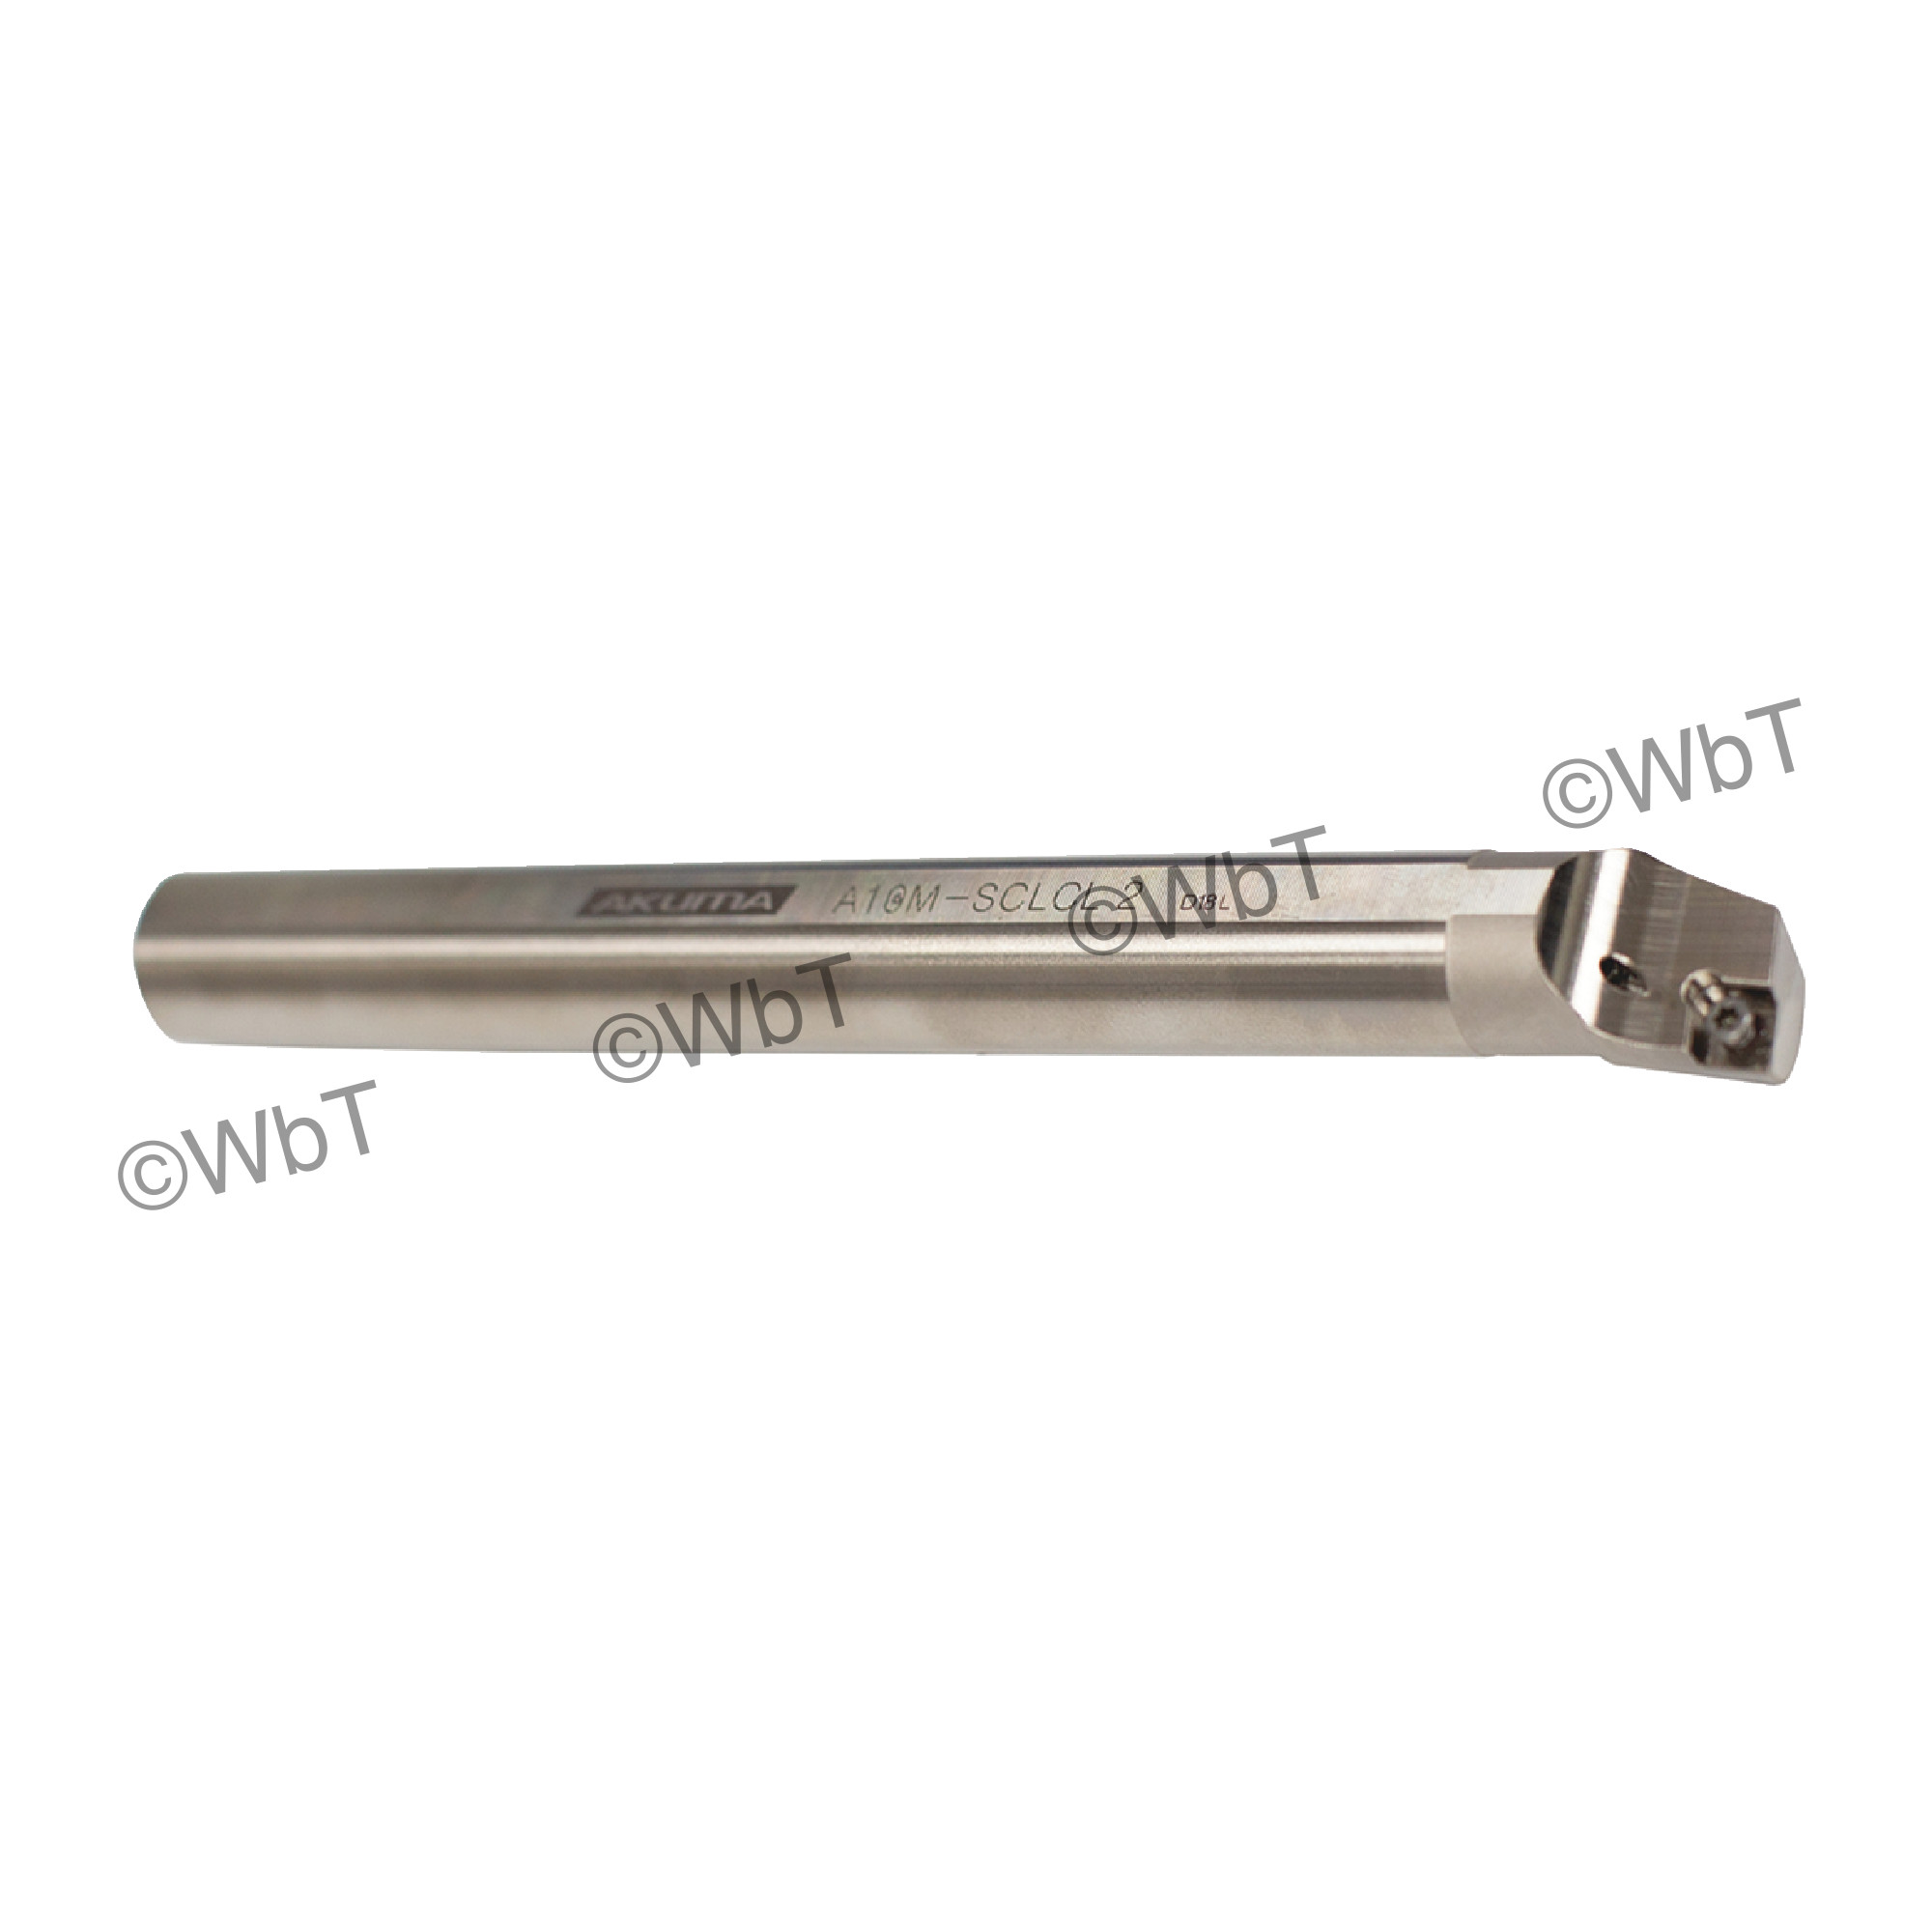 AKUMA - A10M-SCLCL-2 / Steel Boring Bar / 5/8" Shank / CCMT2(1.5)_ / Cooalnt Thru / Left Hand